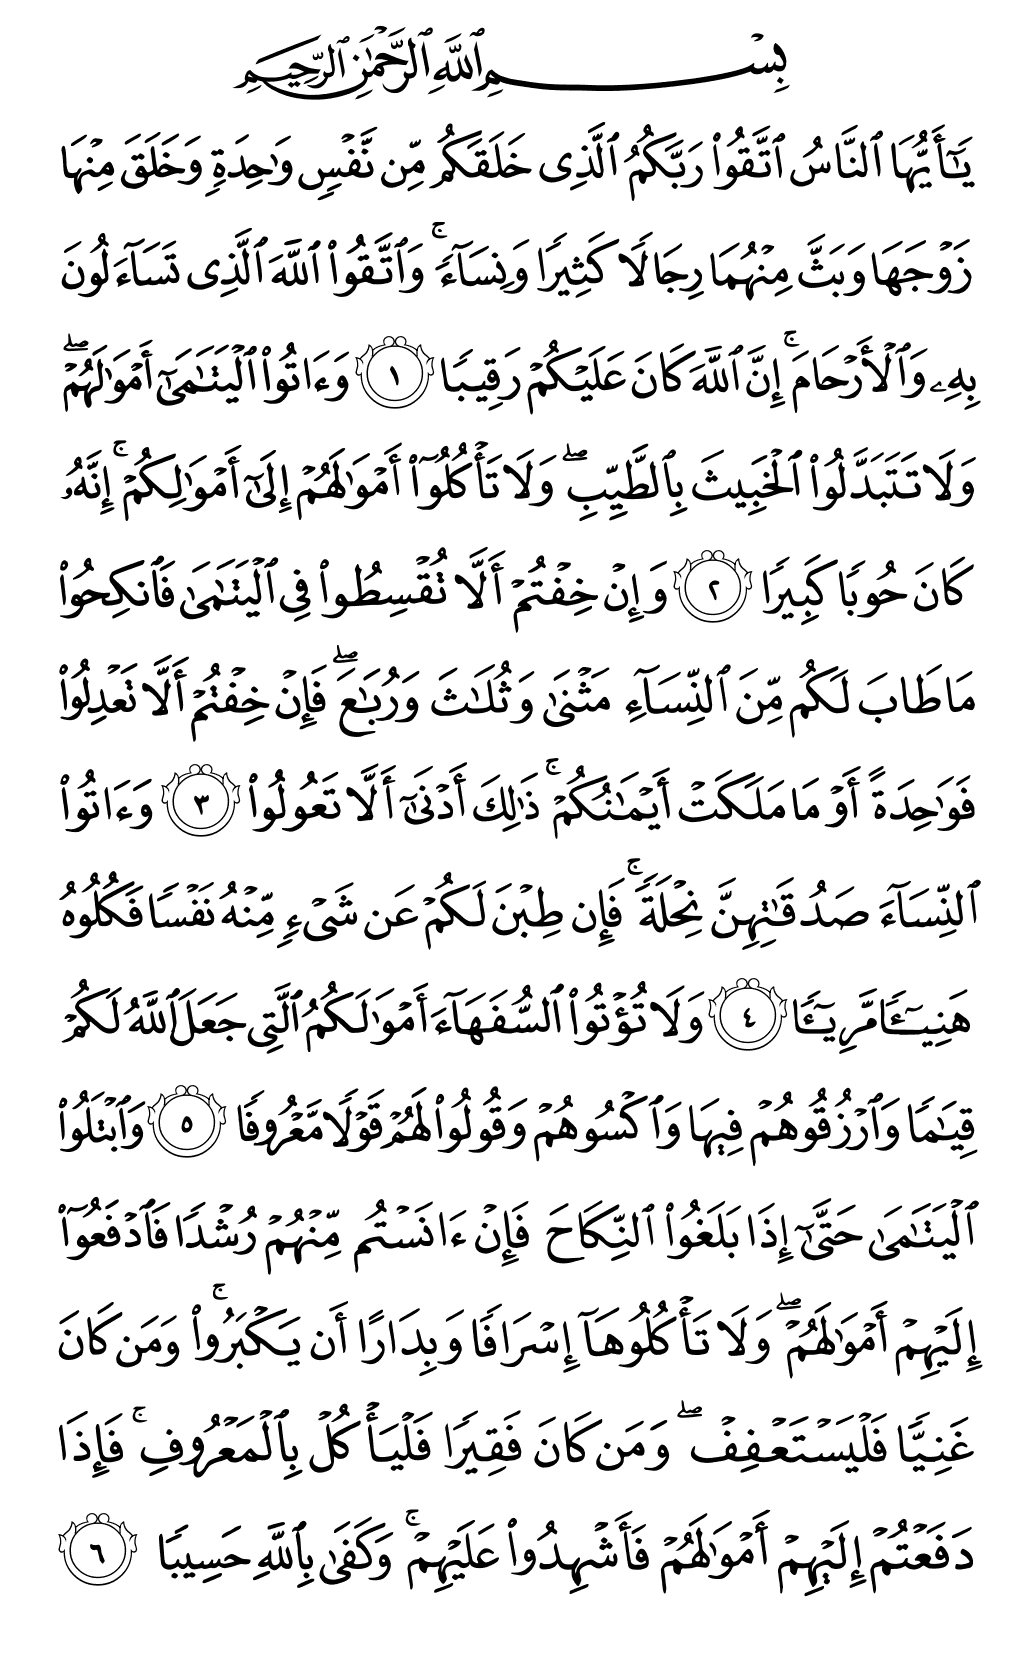 الصفحة رقم 77 من القرآن الكريم